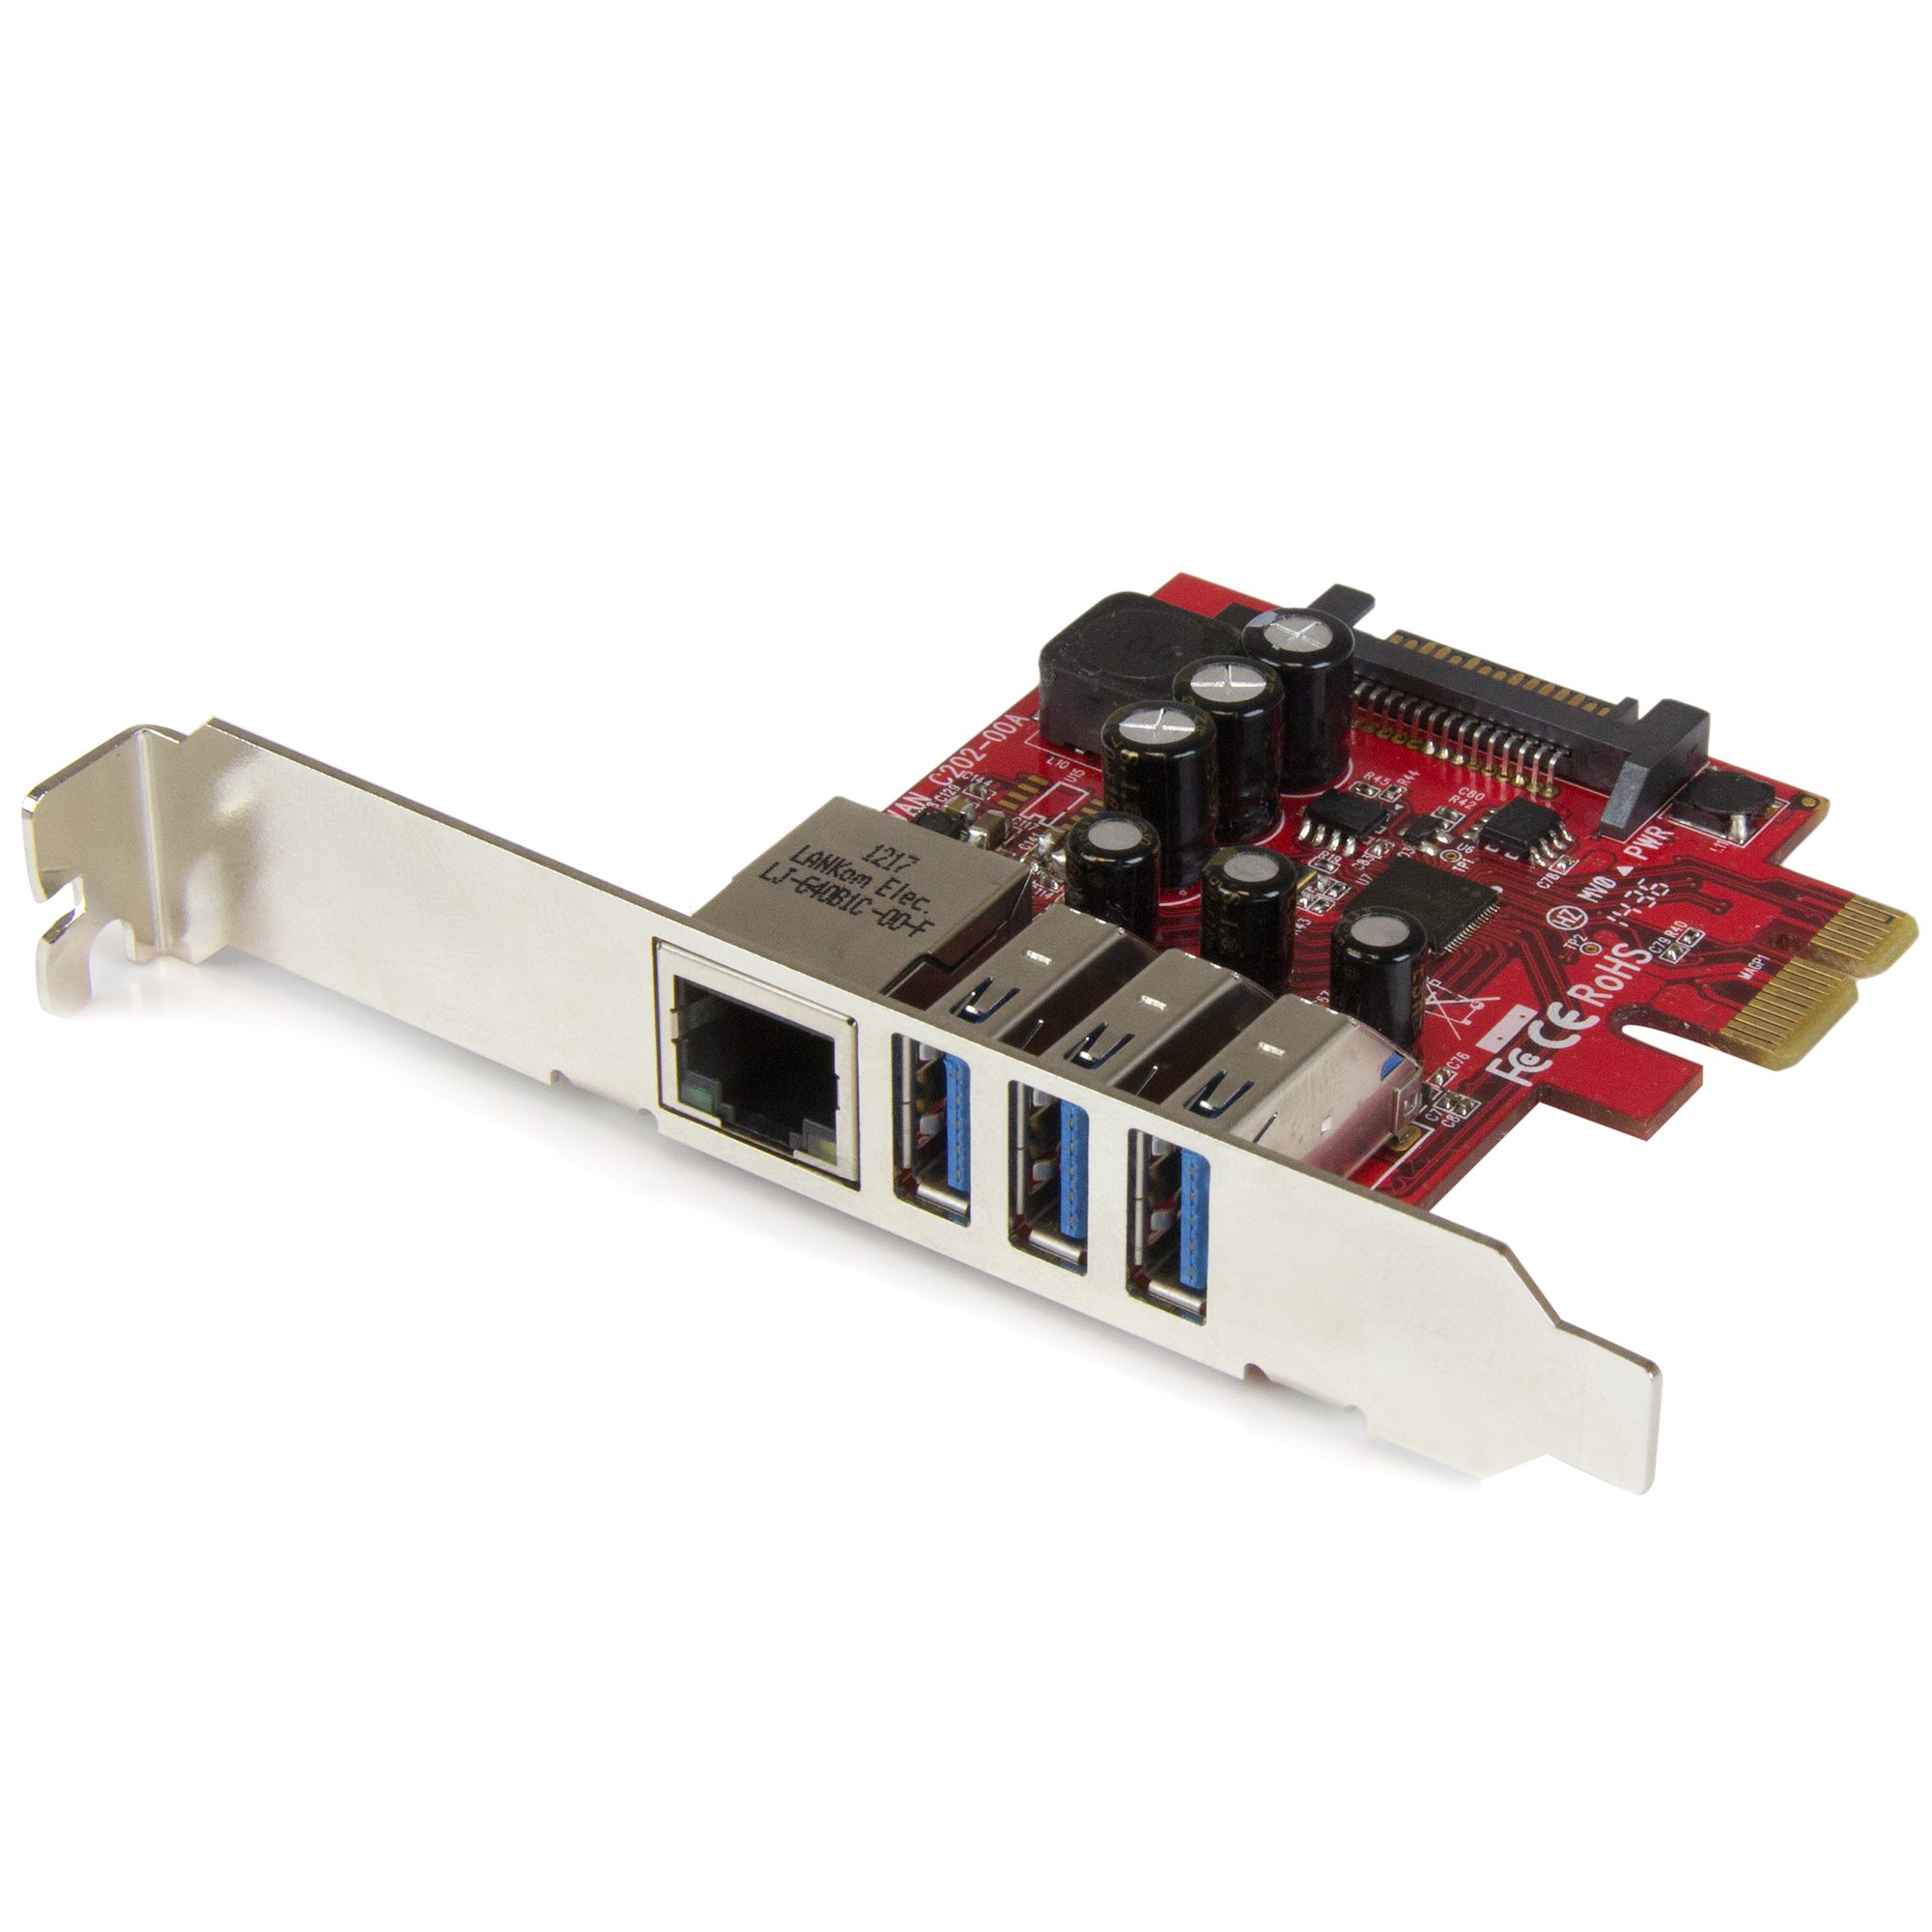 【PEXUSB3S3GE】3 PORT PCIE USB 3.0 CARD + GBE